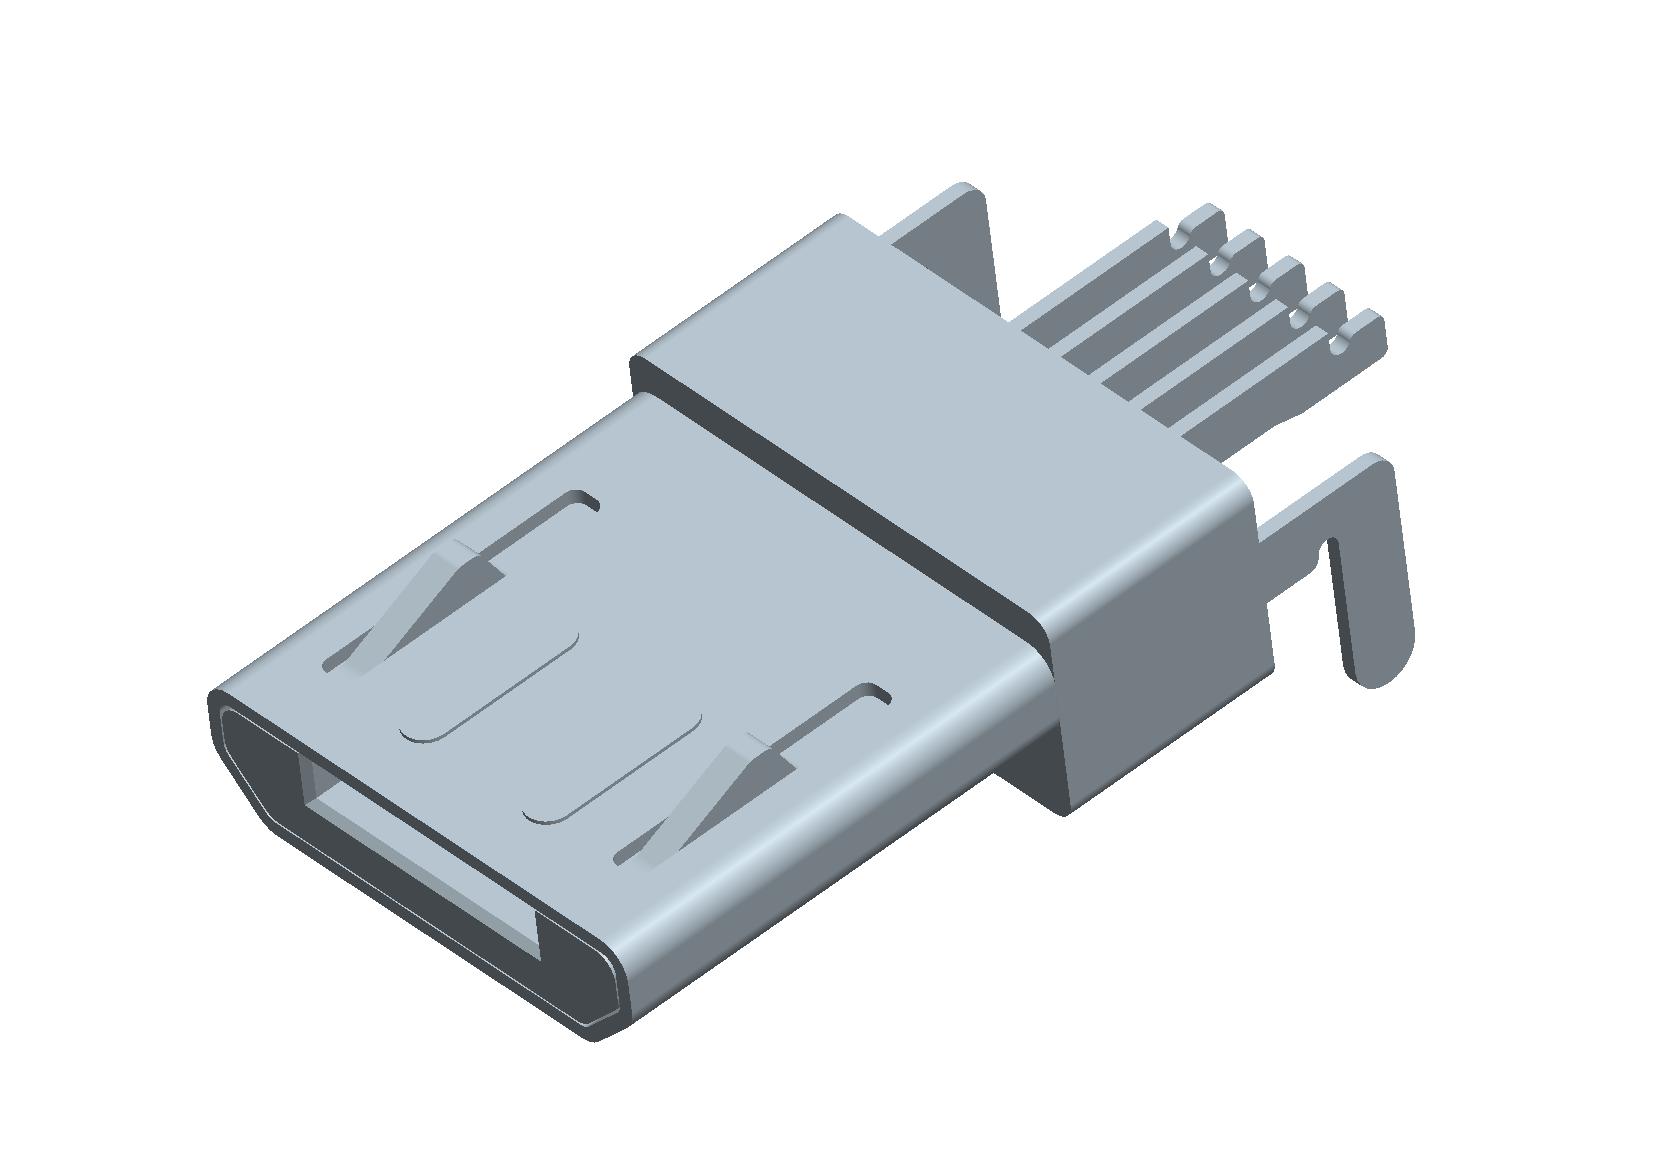 HDMI Connector Supplier Taiwan